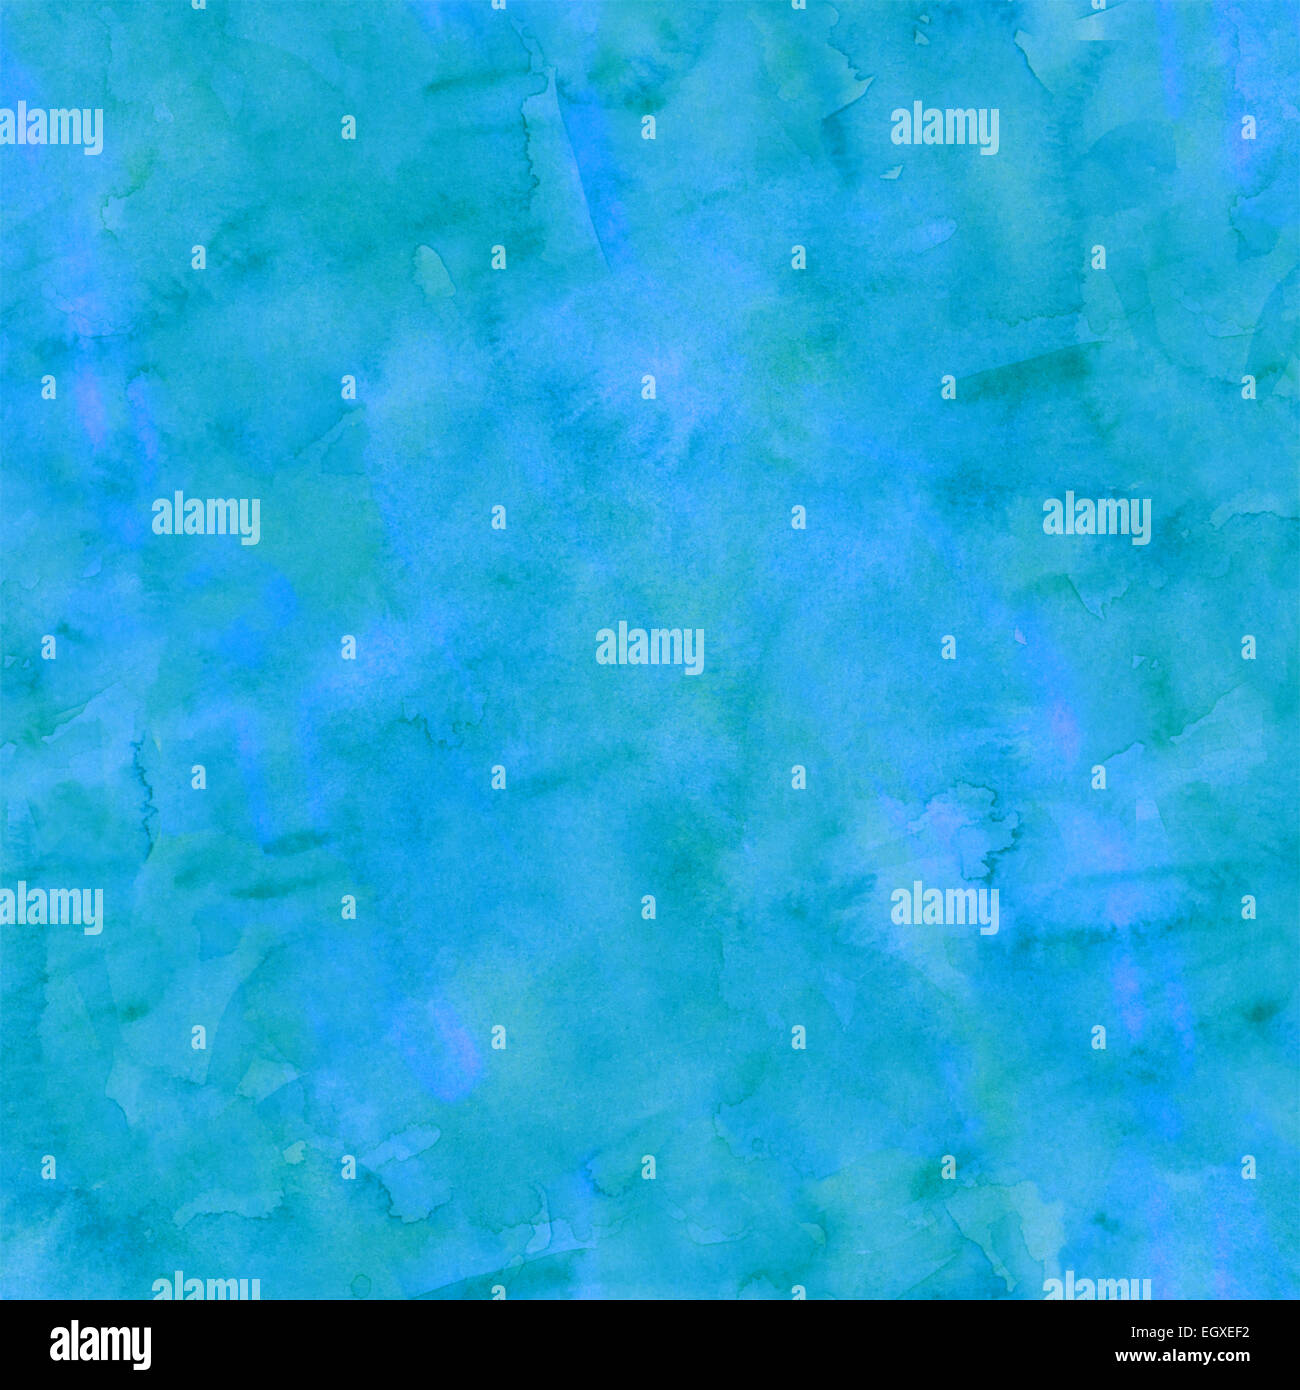 Le bleu et le vert Aqua Teal Turquoise Aquarelle papier texture d'arrière-plan Banque D'Images